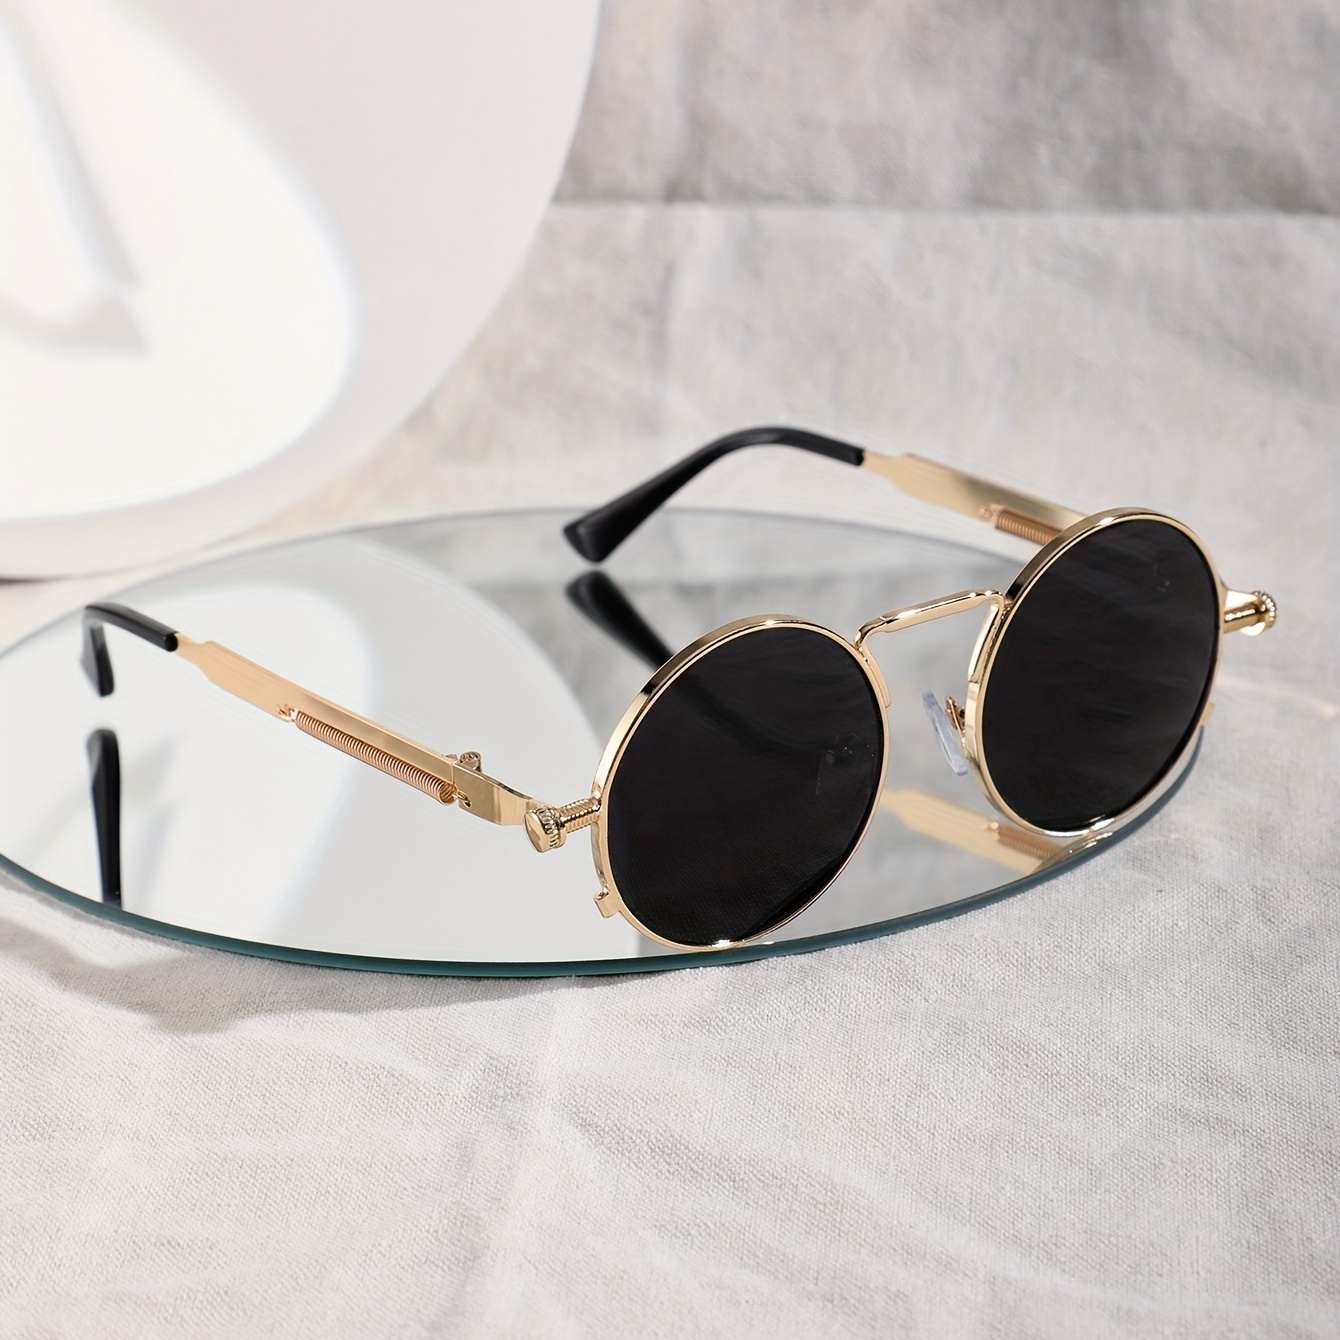 Nuevas gafas de sol retro vintage estilo fiesta TECHNO marco hombre mujer  Rave EDM unisex